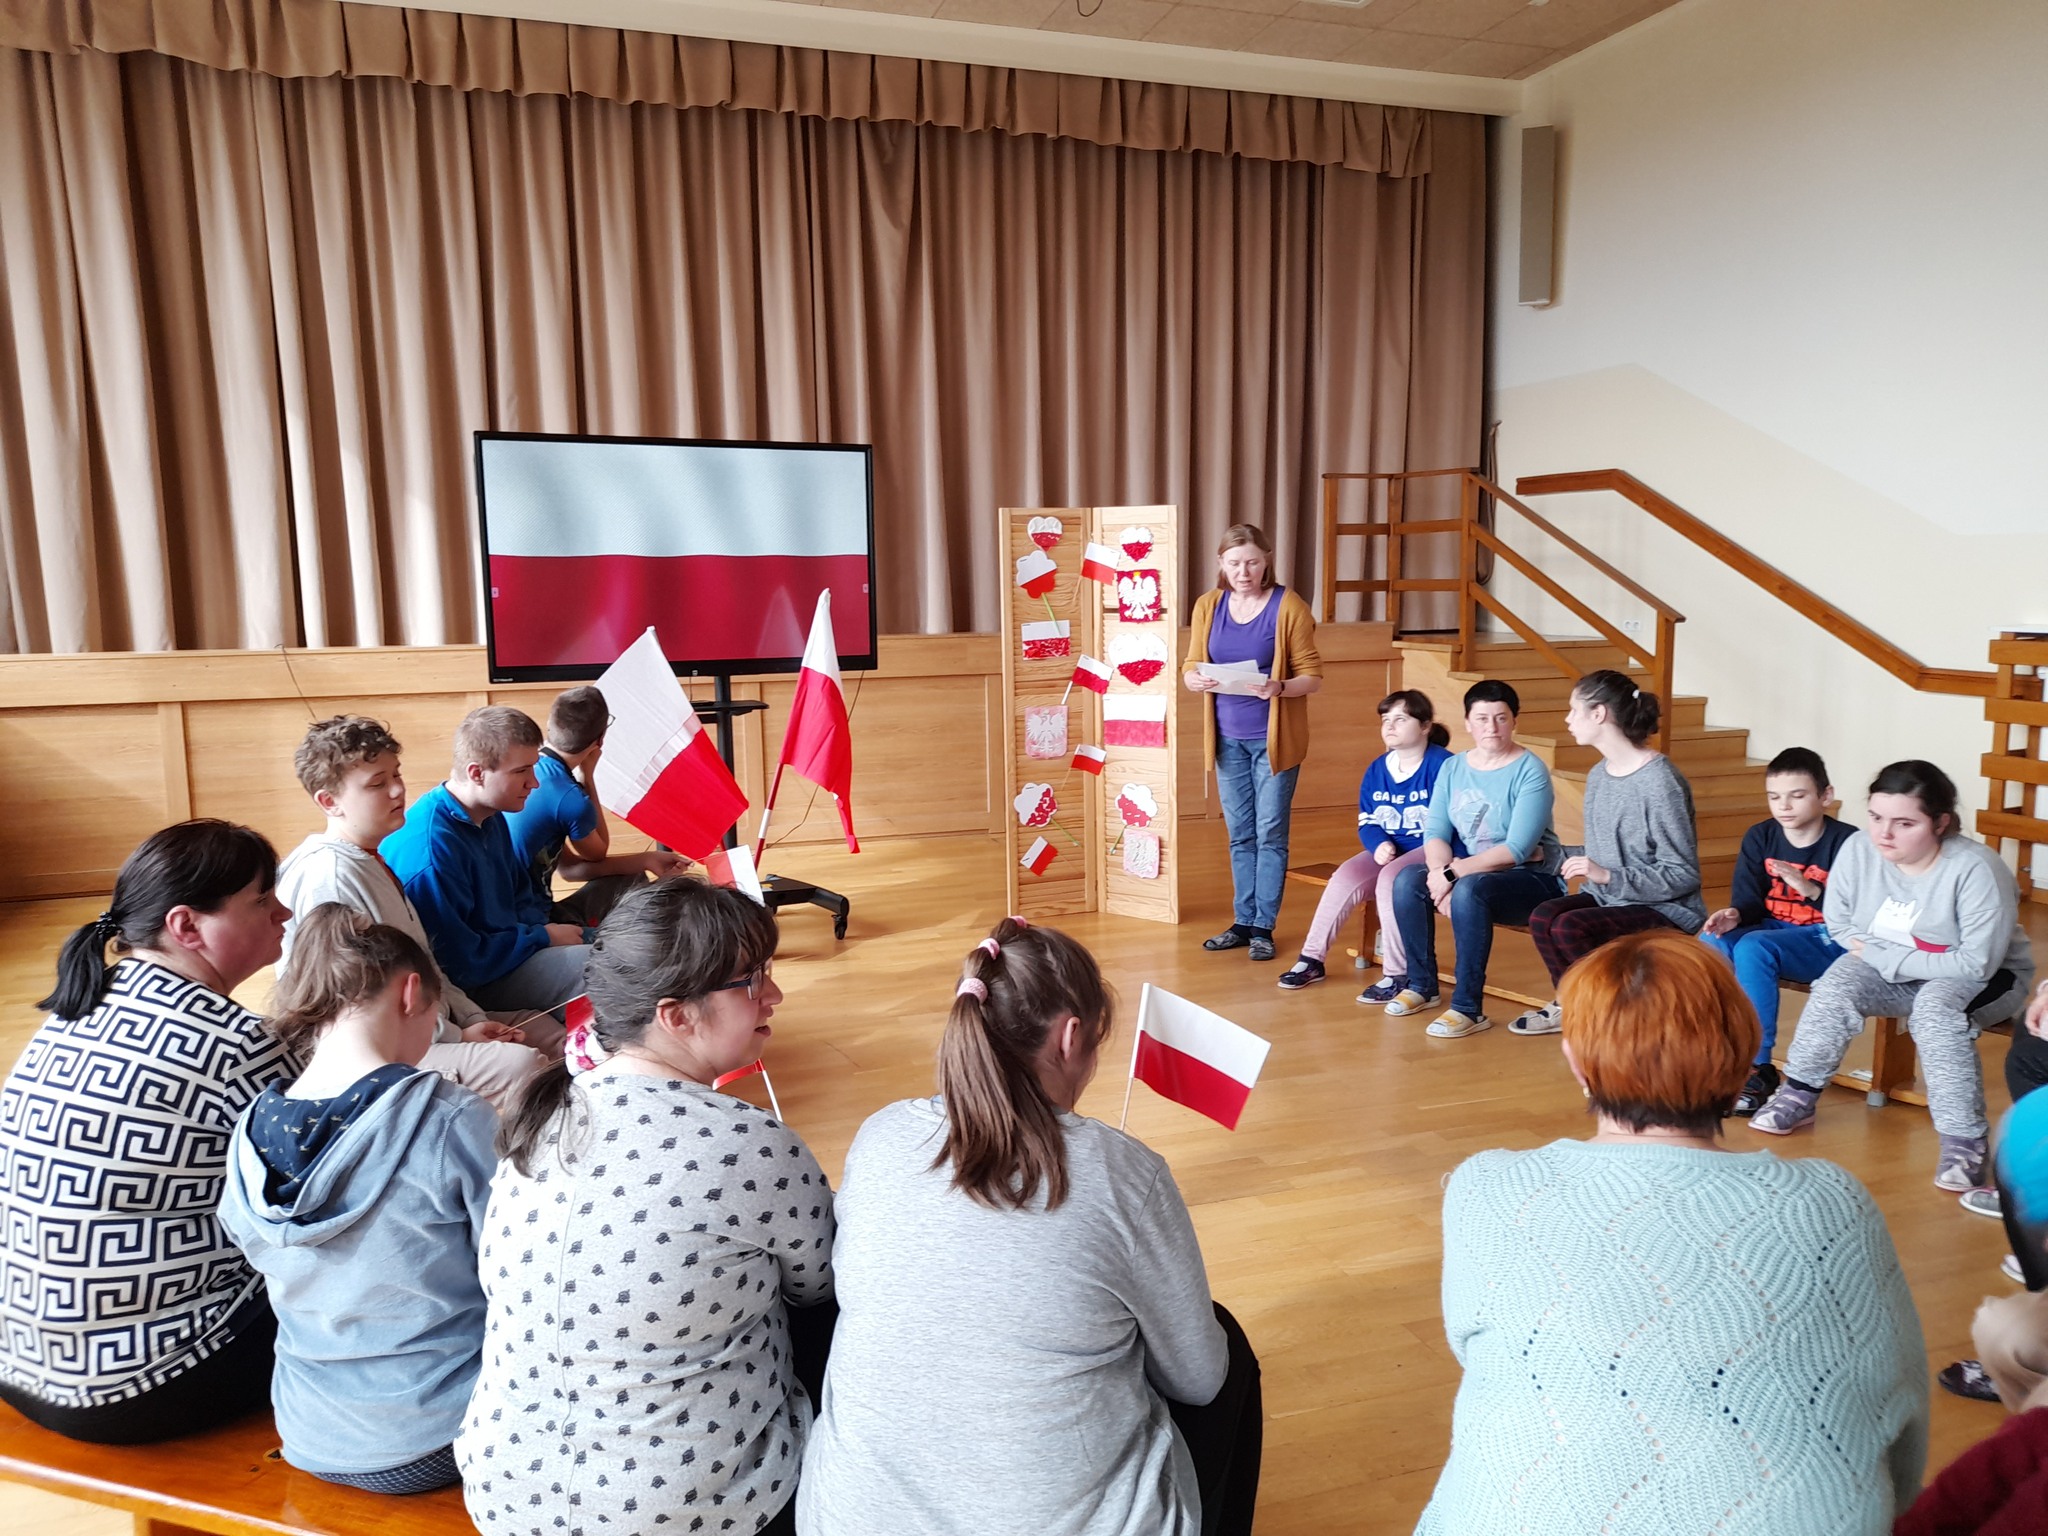 Uczniowie siedzą z flagami polski na ławeczkach i słuchają wychowawcy.